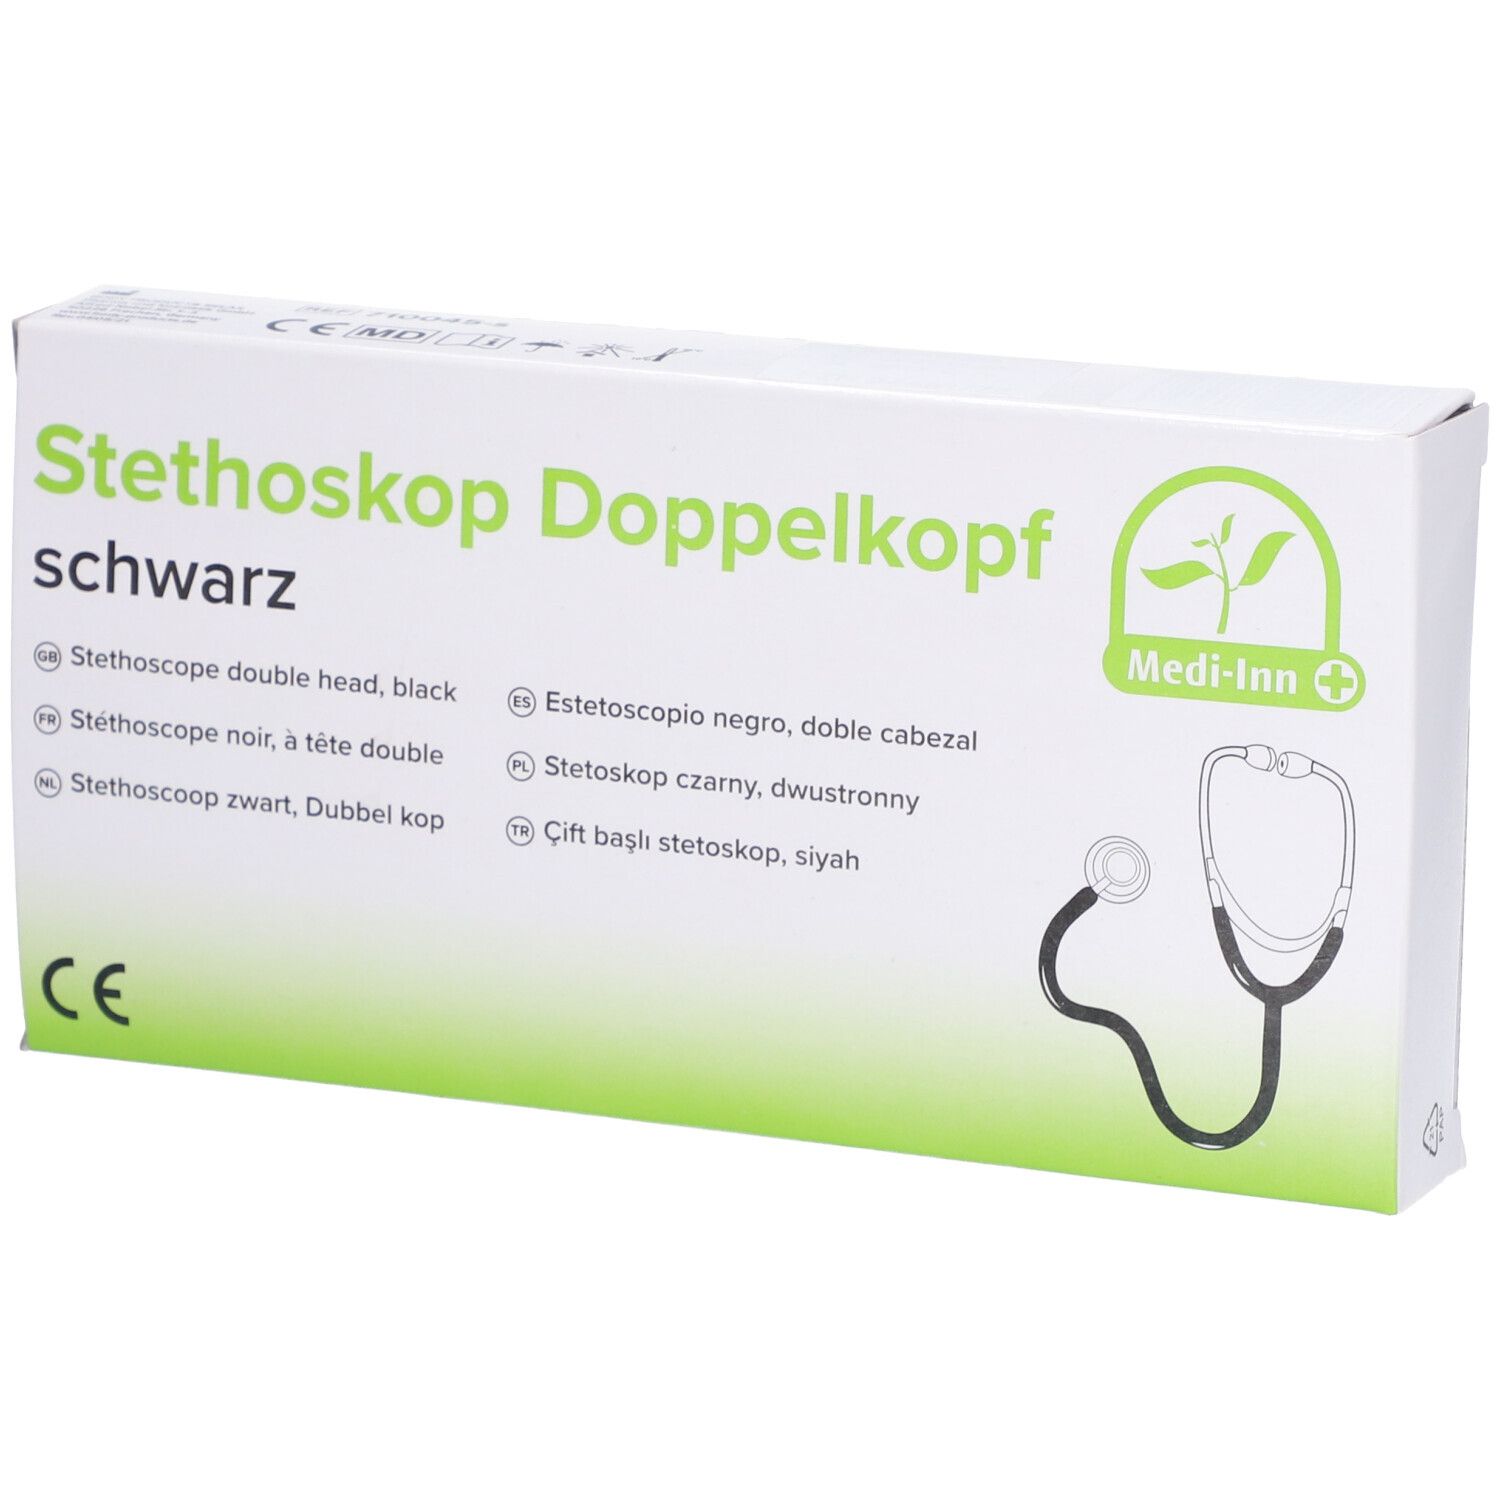 Dr. Junghans® Stethoskop Doppelkopf